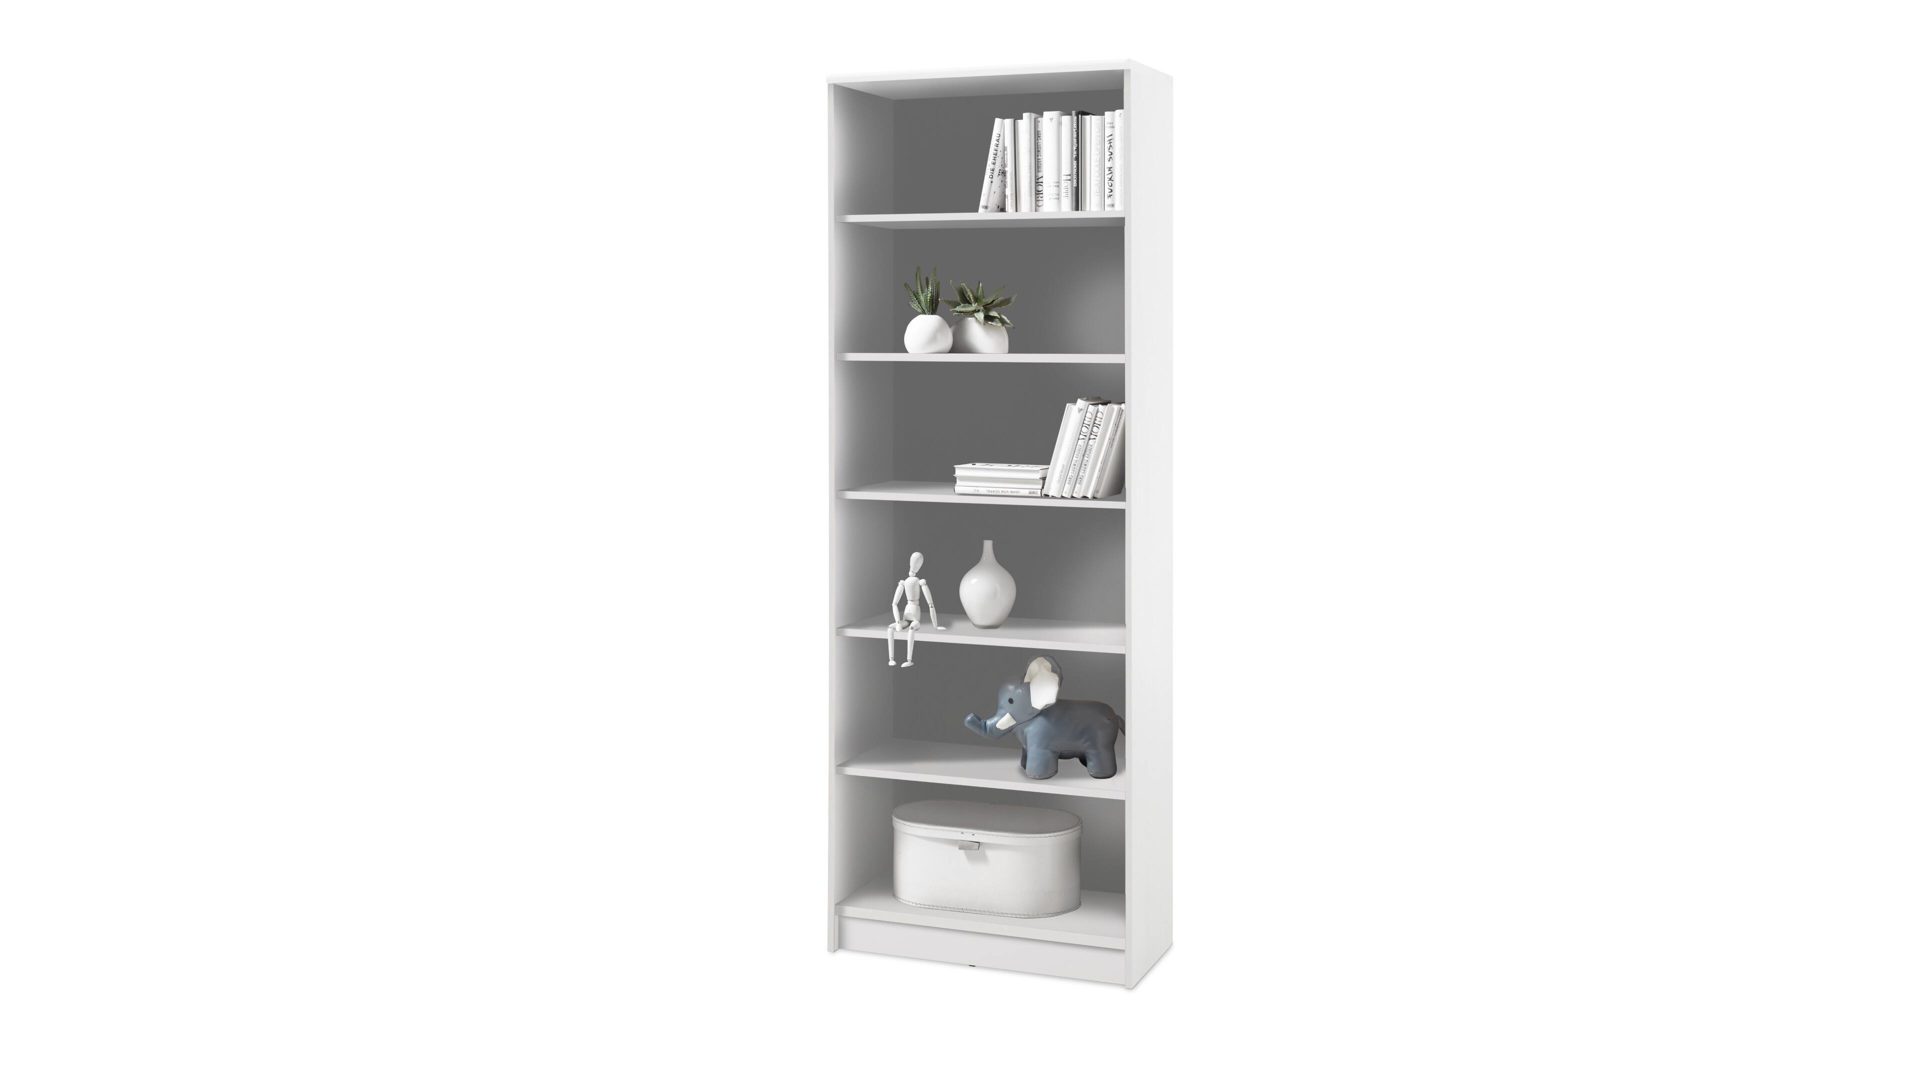 Regal Bega consult aus Holz in Weiß Bücherregal auch als Büromöbel einsetzbar weiße Kunststoffoberflächen – Höhe ca. 198 cm, fünf Böden